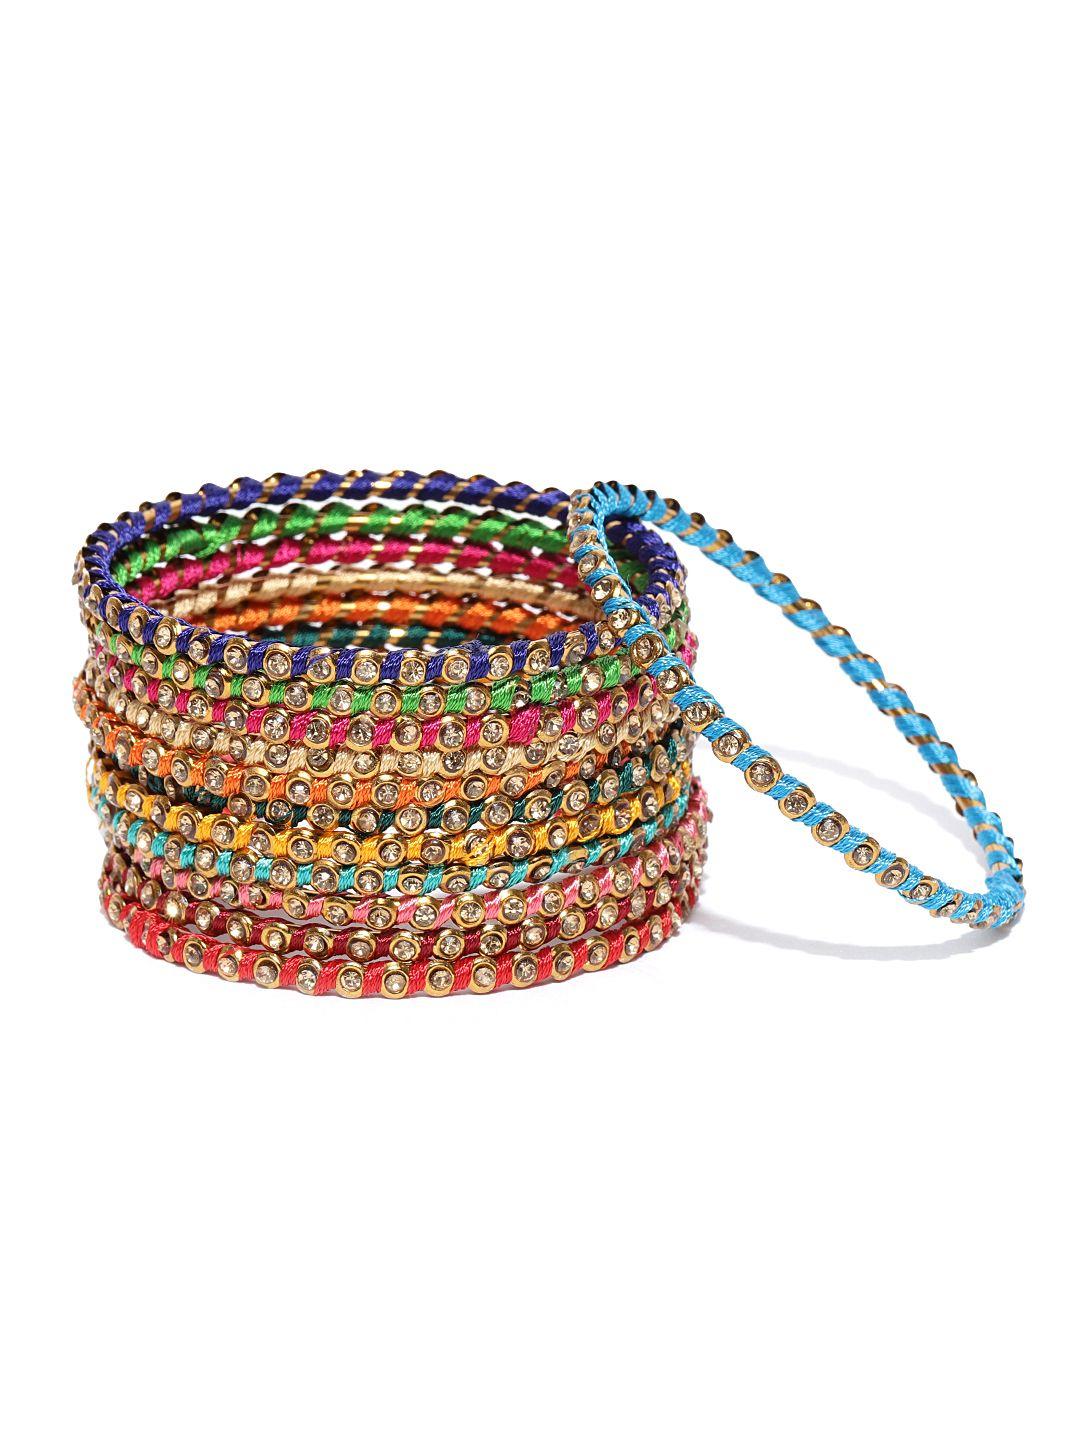 youbella set of 12 multicoloured stone-studded bangles